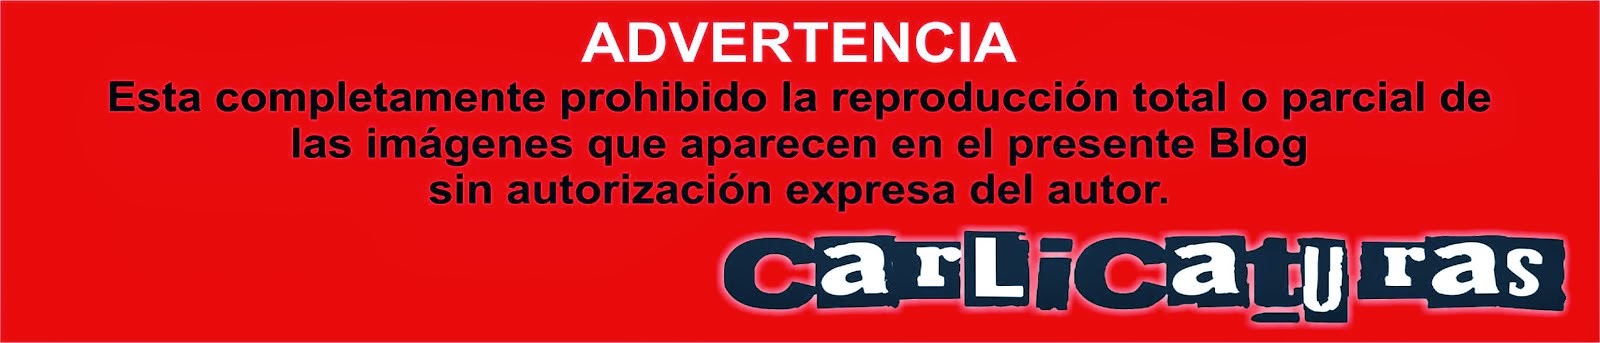 ADVERTENCIA CARLICATURAS